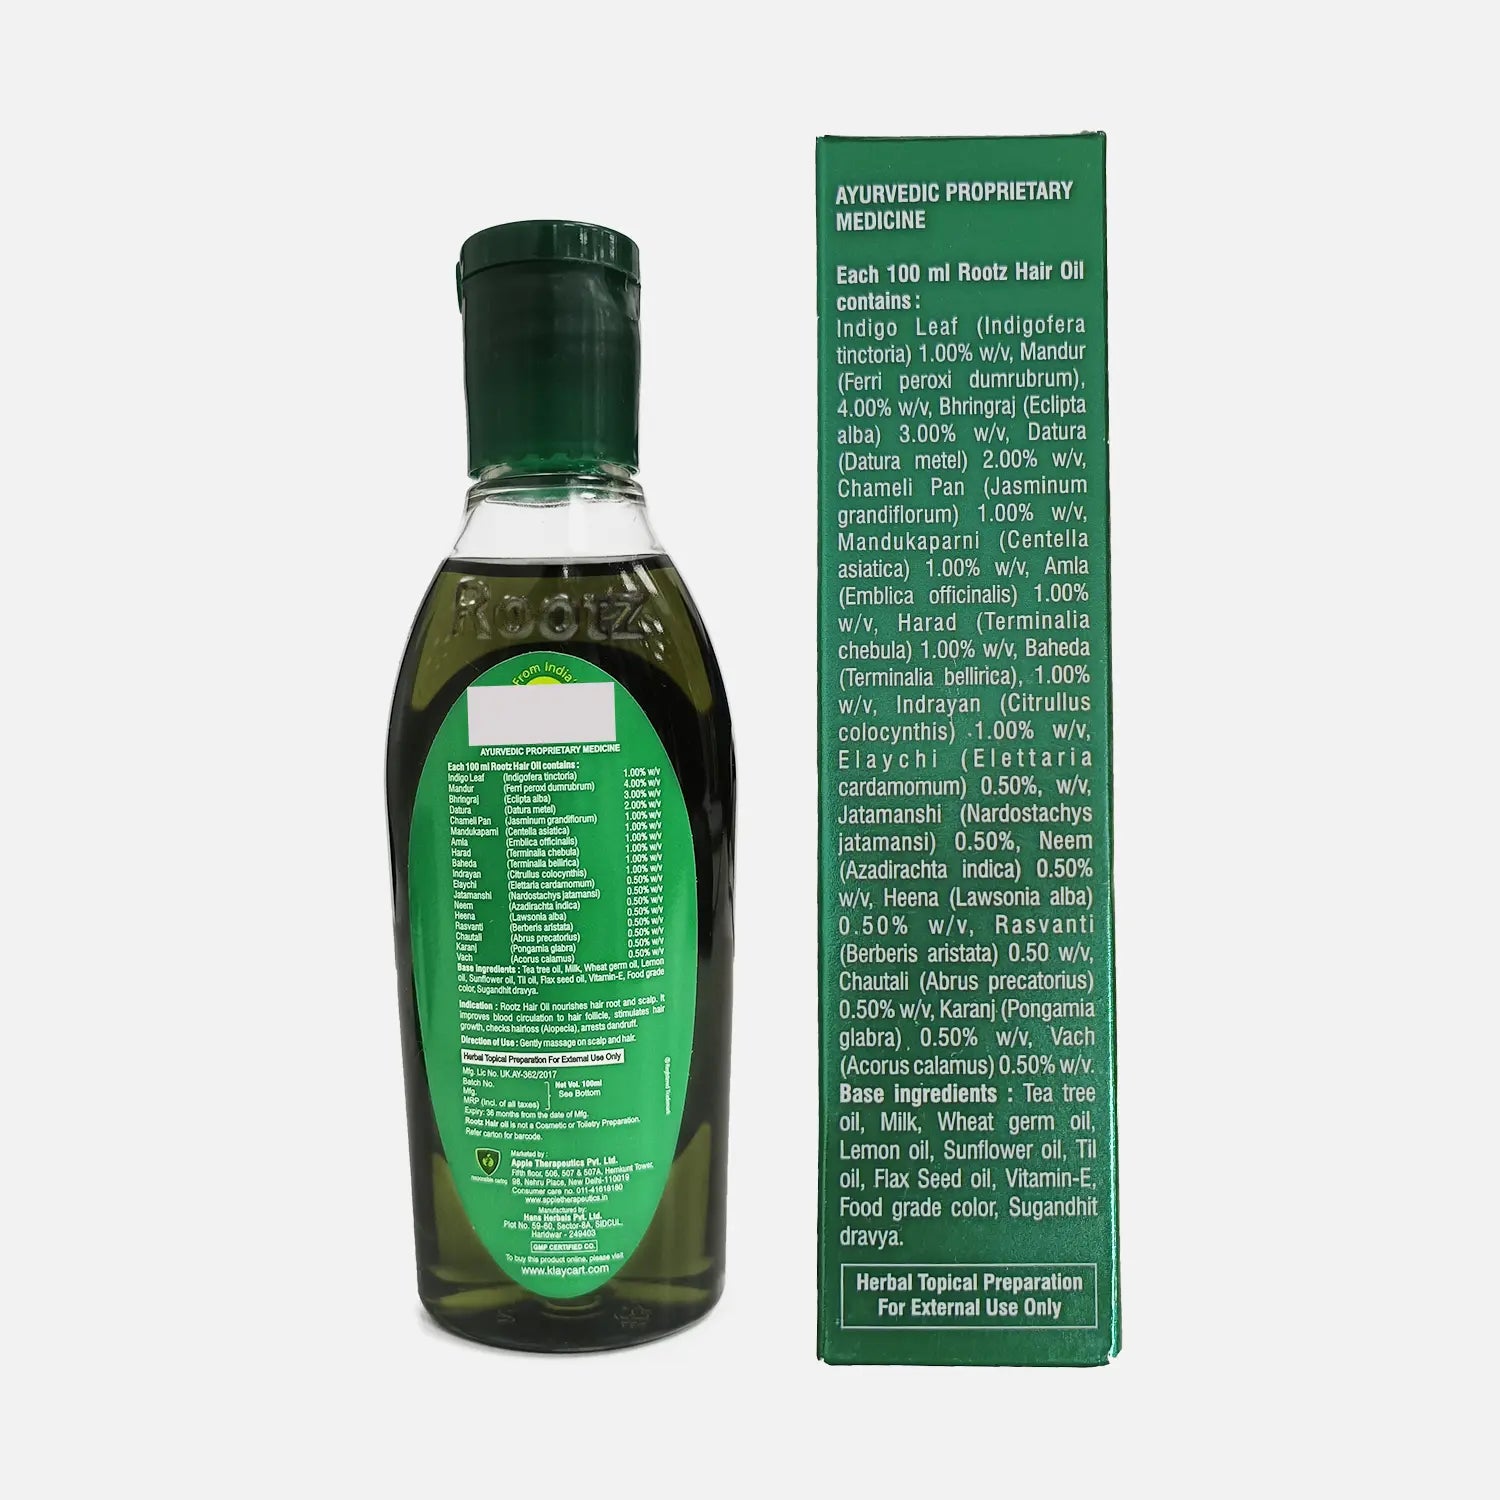 Rootz Hair Oil - Klaycart